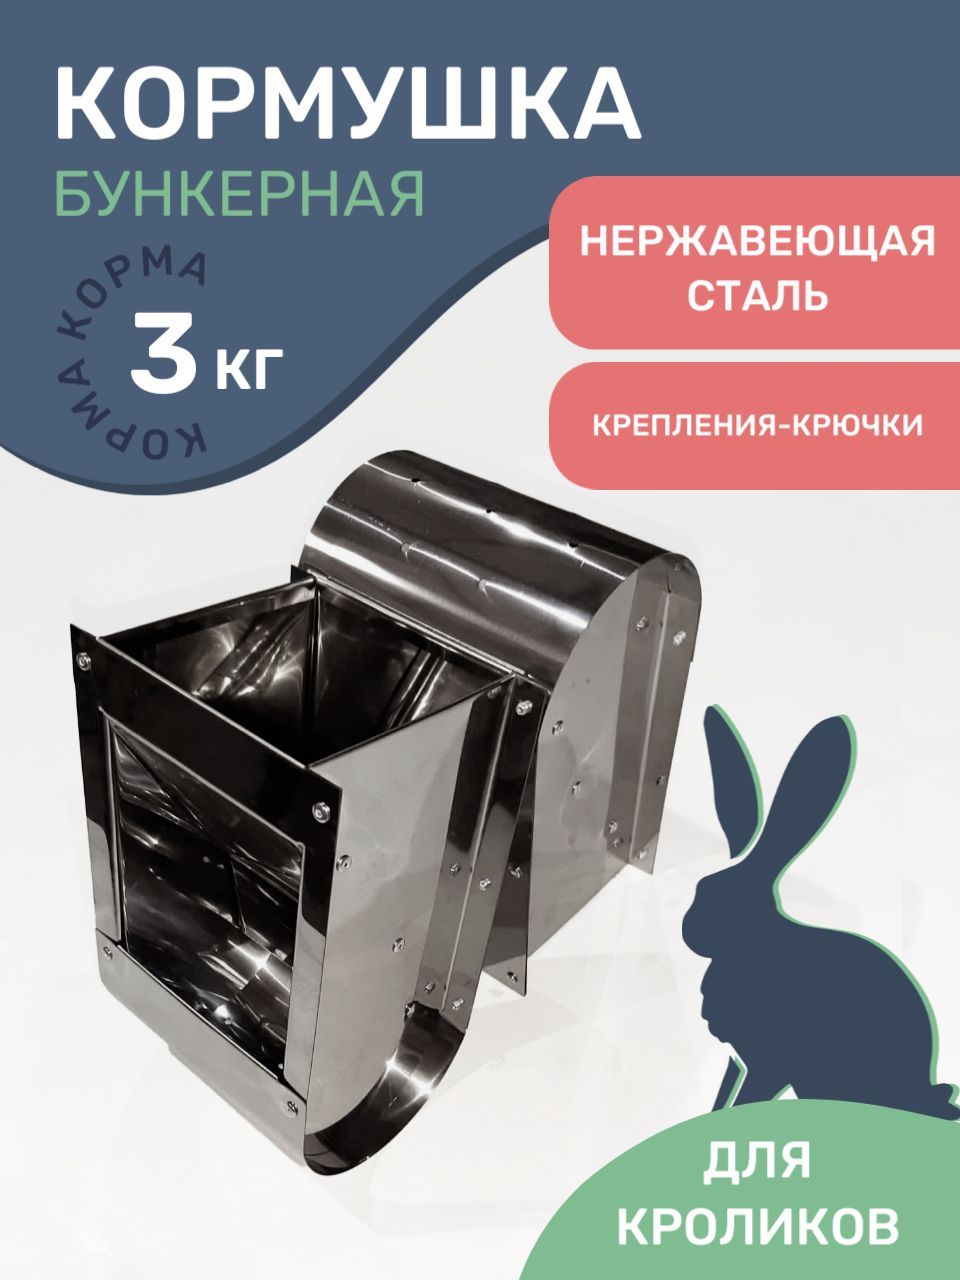 OLX.ua - объявления в Украине - кормушки для кроликов